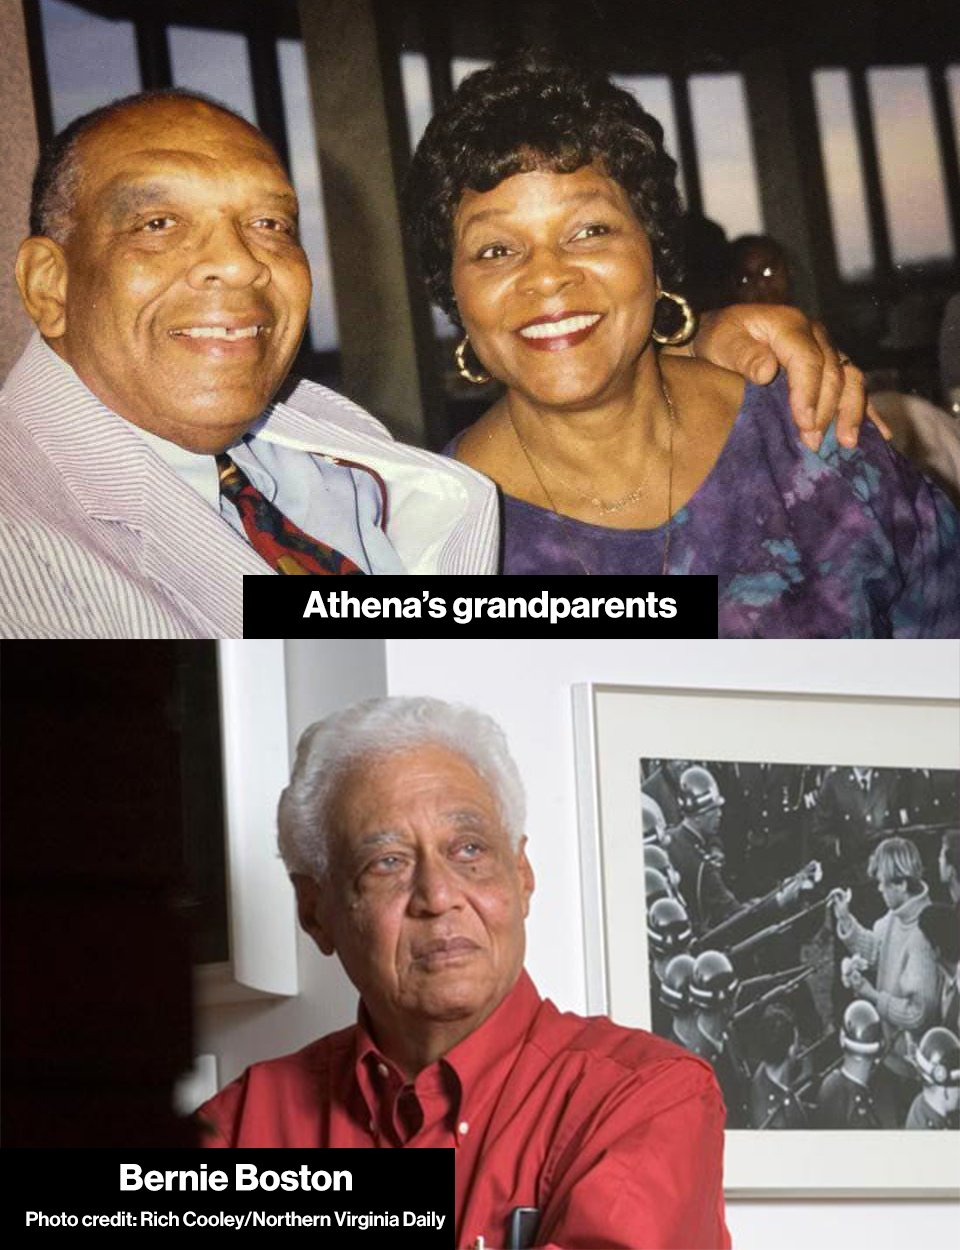 Top image: two older black people sitting together; Bottom Image: Black man standing